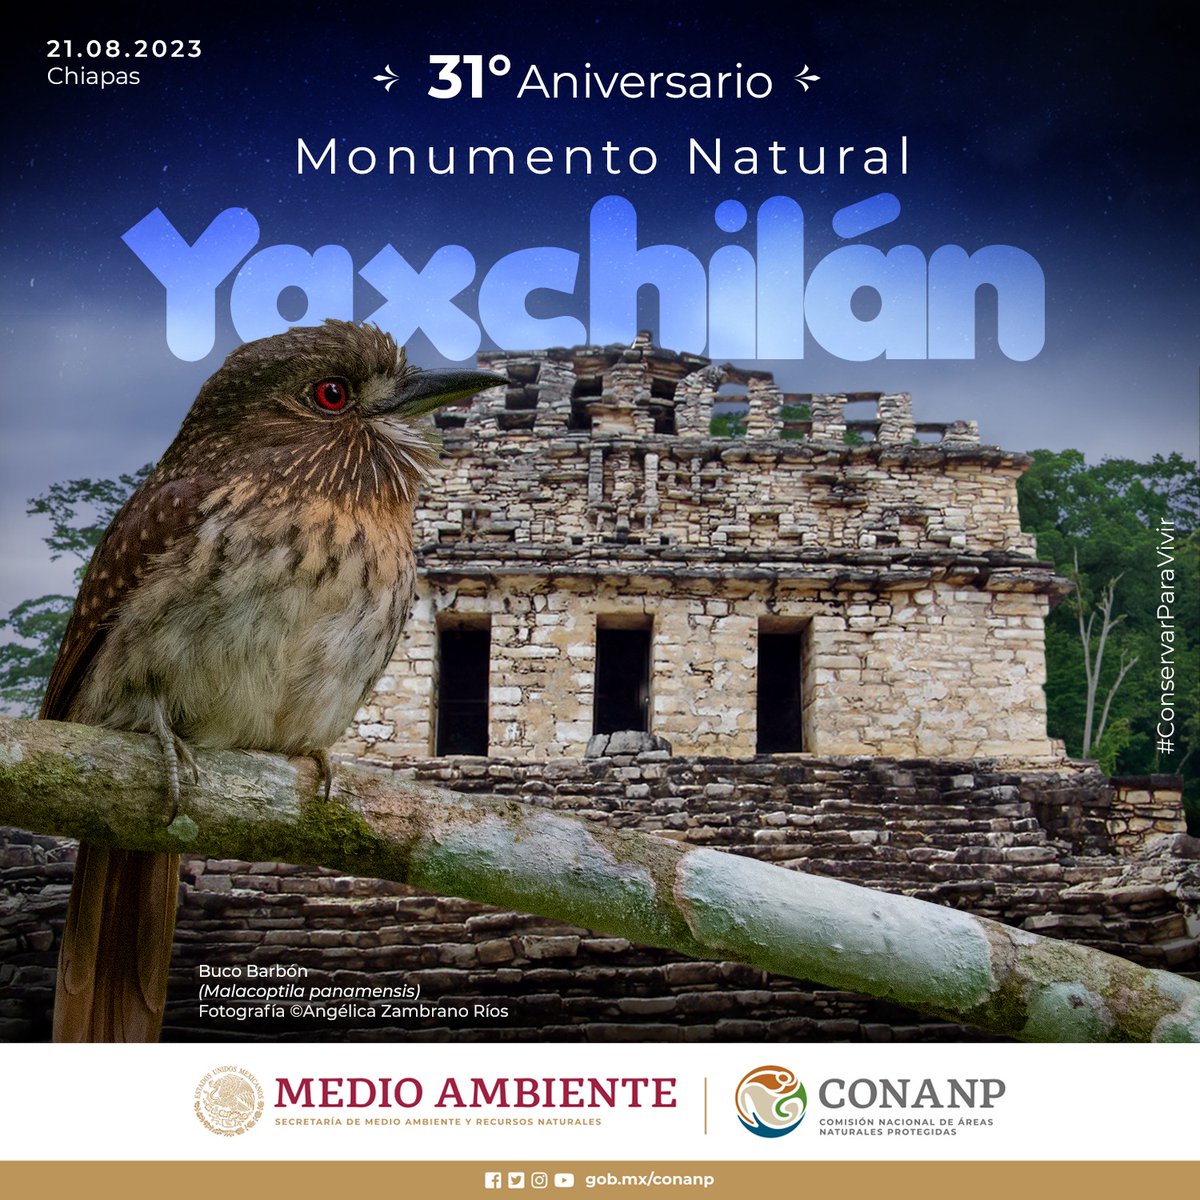 ¡Se cumplen 31 años del decreto del Monumento Natural #Yaxchilán como #ÁreaNaturalProtegida! 🥳🎉 Zona de selva con especies emblemáticas como la #GuacamayaRoja y el #MonoAullador. 🐒🌳 #ConservarParaVivir 🦋🐝🦜🐆🐊🦩🌿🌻🐾🌲